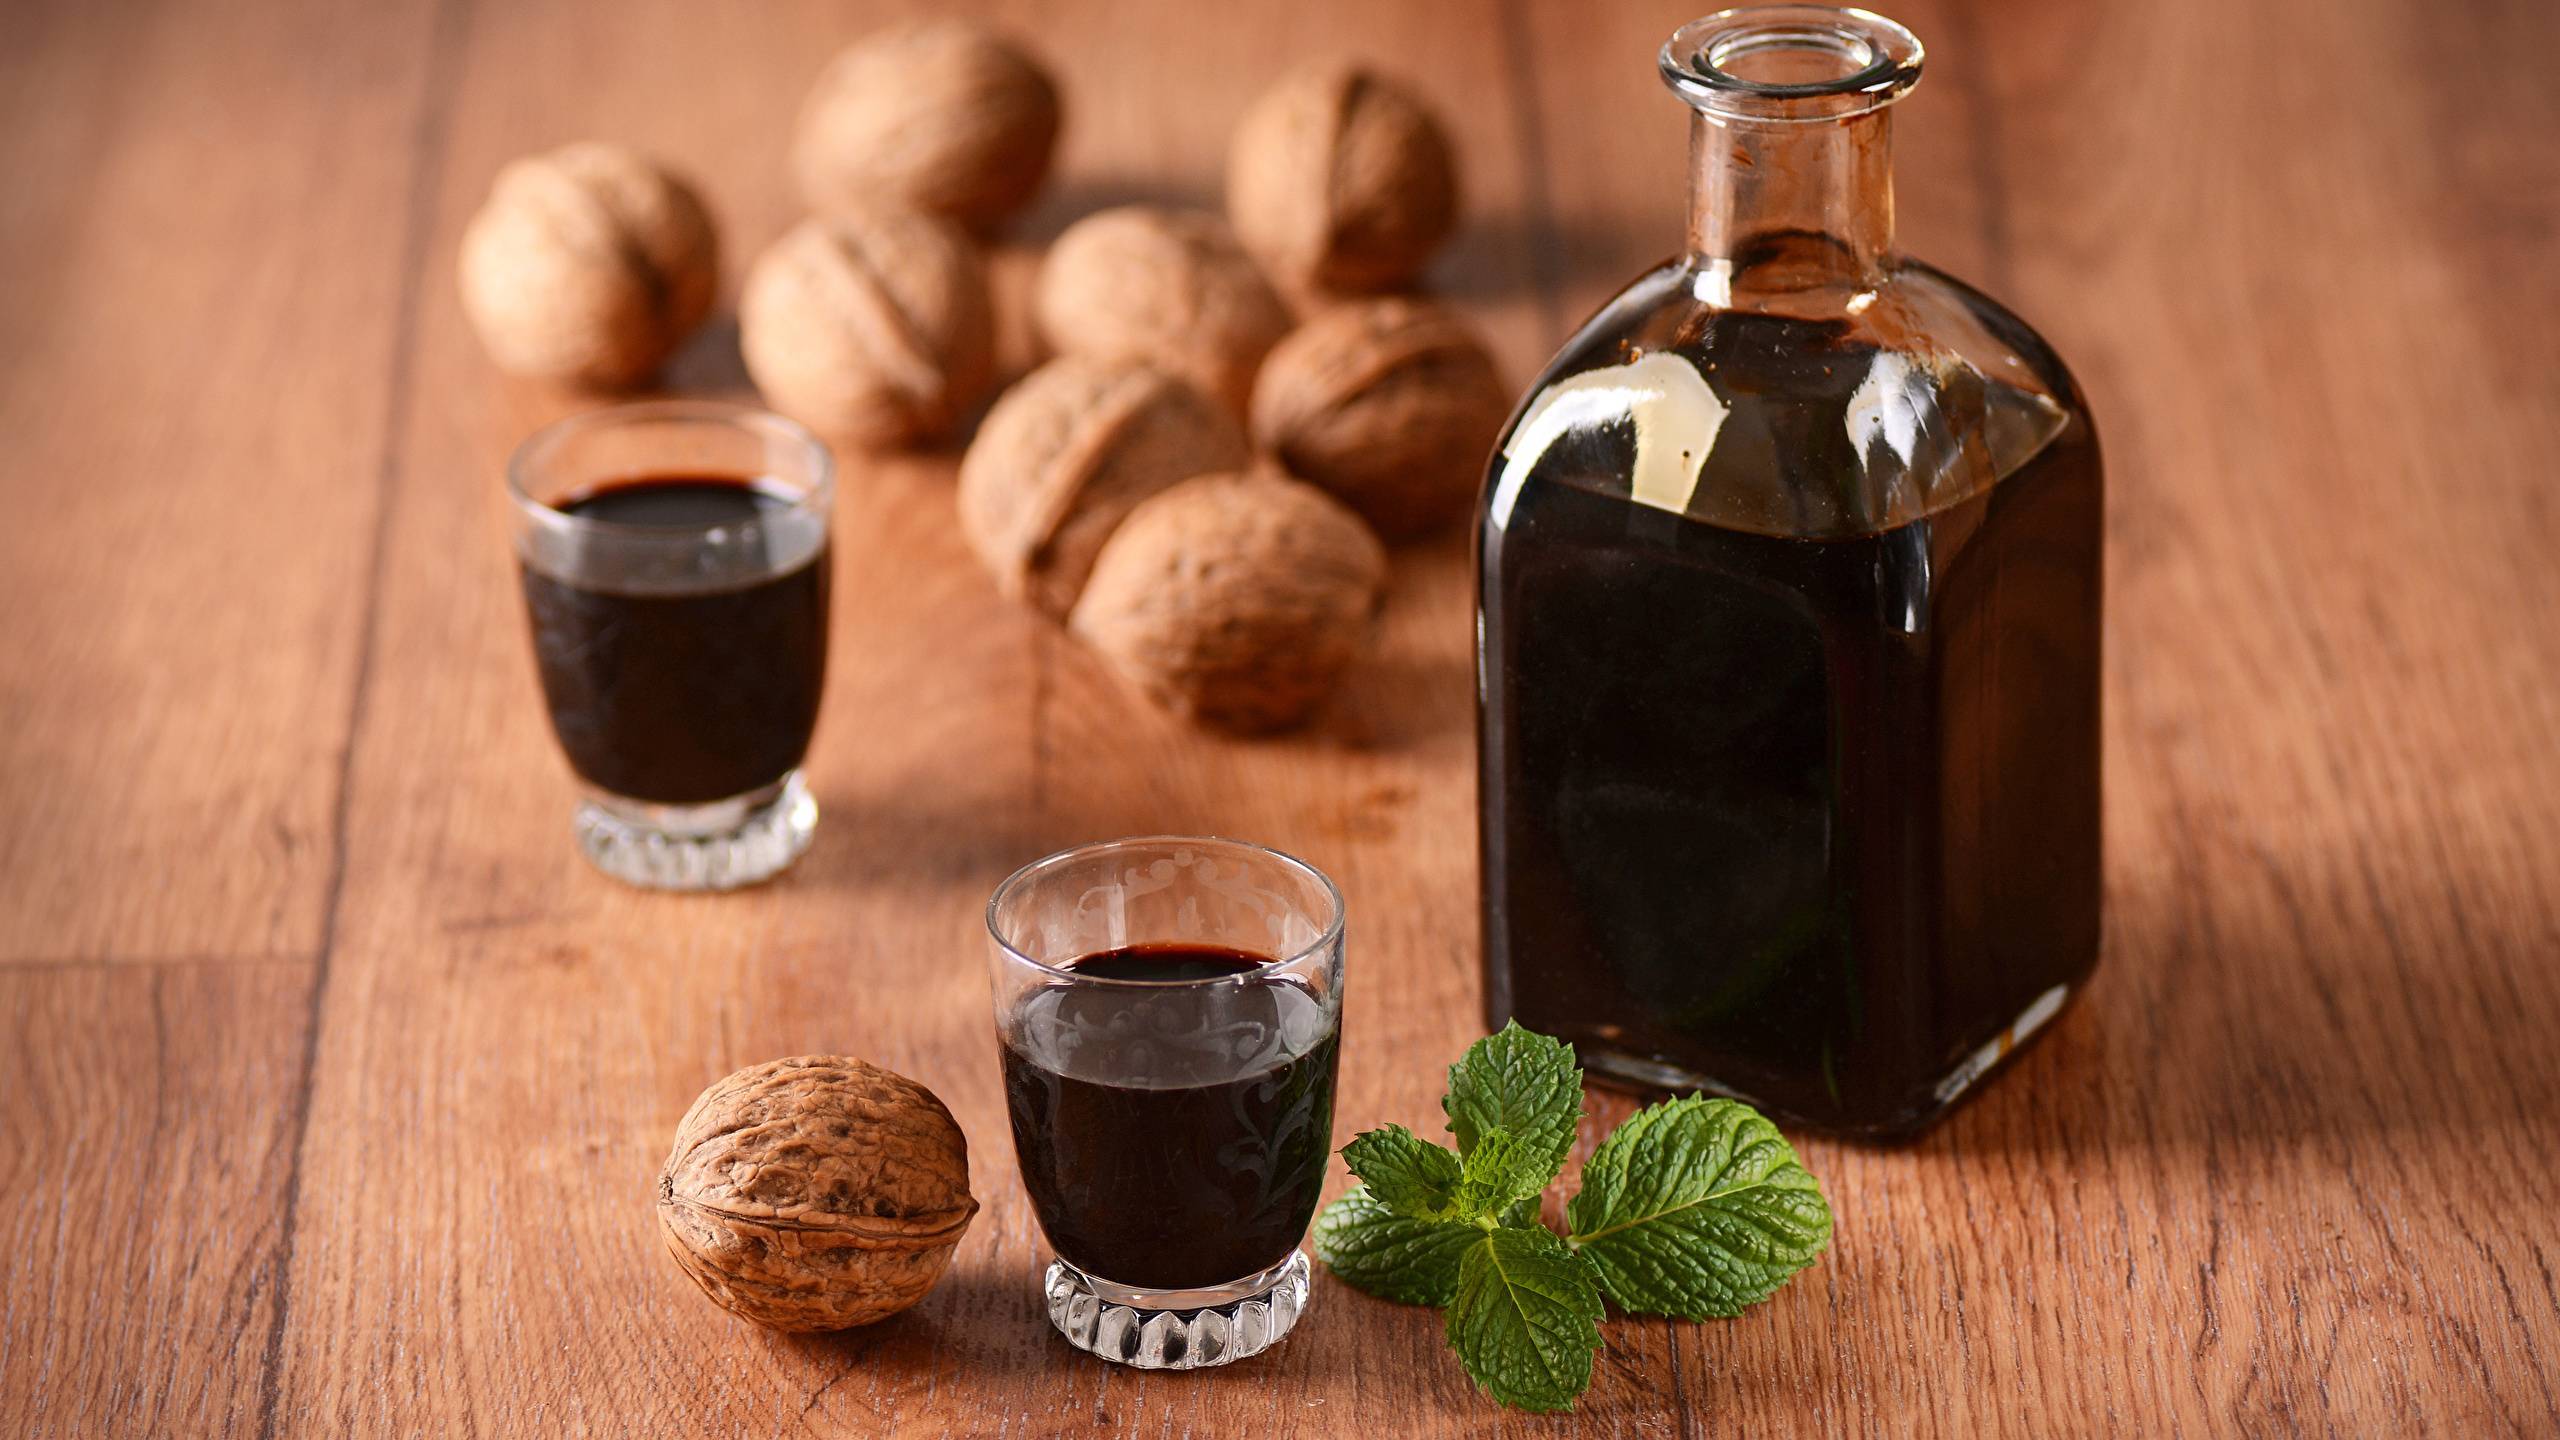 Рецепты народной медицины на грецких орехах: применение перегородок, листьев, скорлупы и ядер при изготовлении лекарств